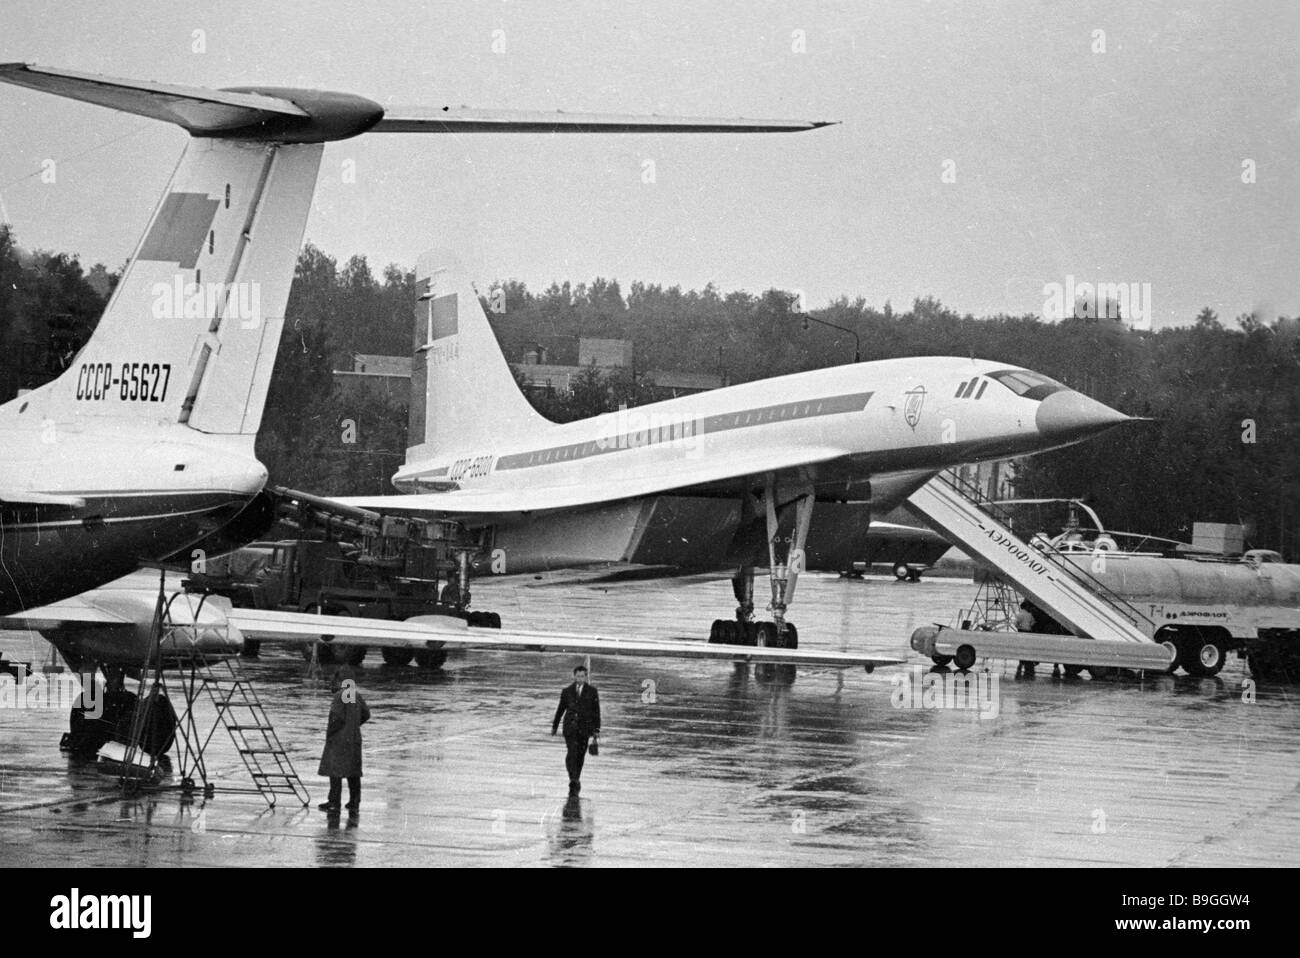 Ein sowjetisches Überschall Tu 144 Flugzeug am Flughafen Scheremetjewo  Stockfotografie - Alamy